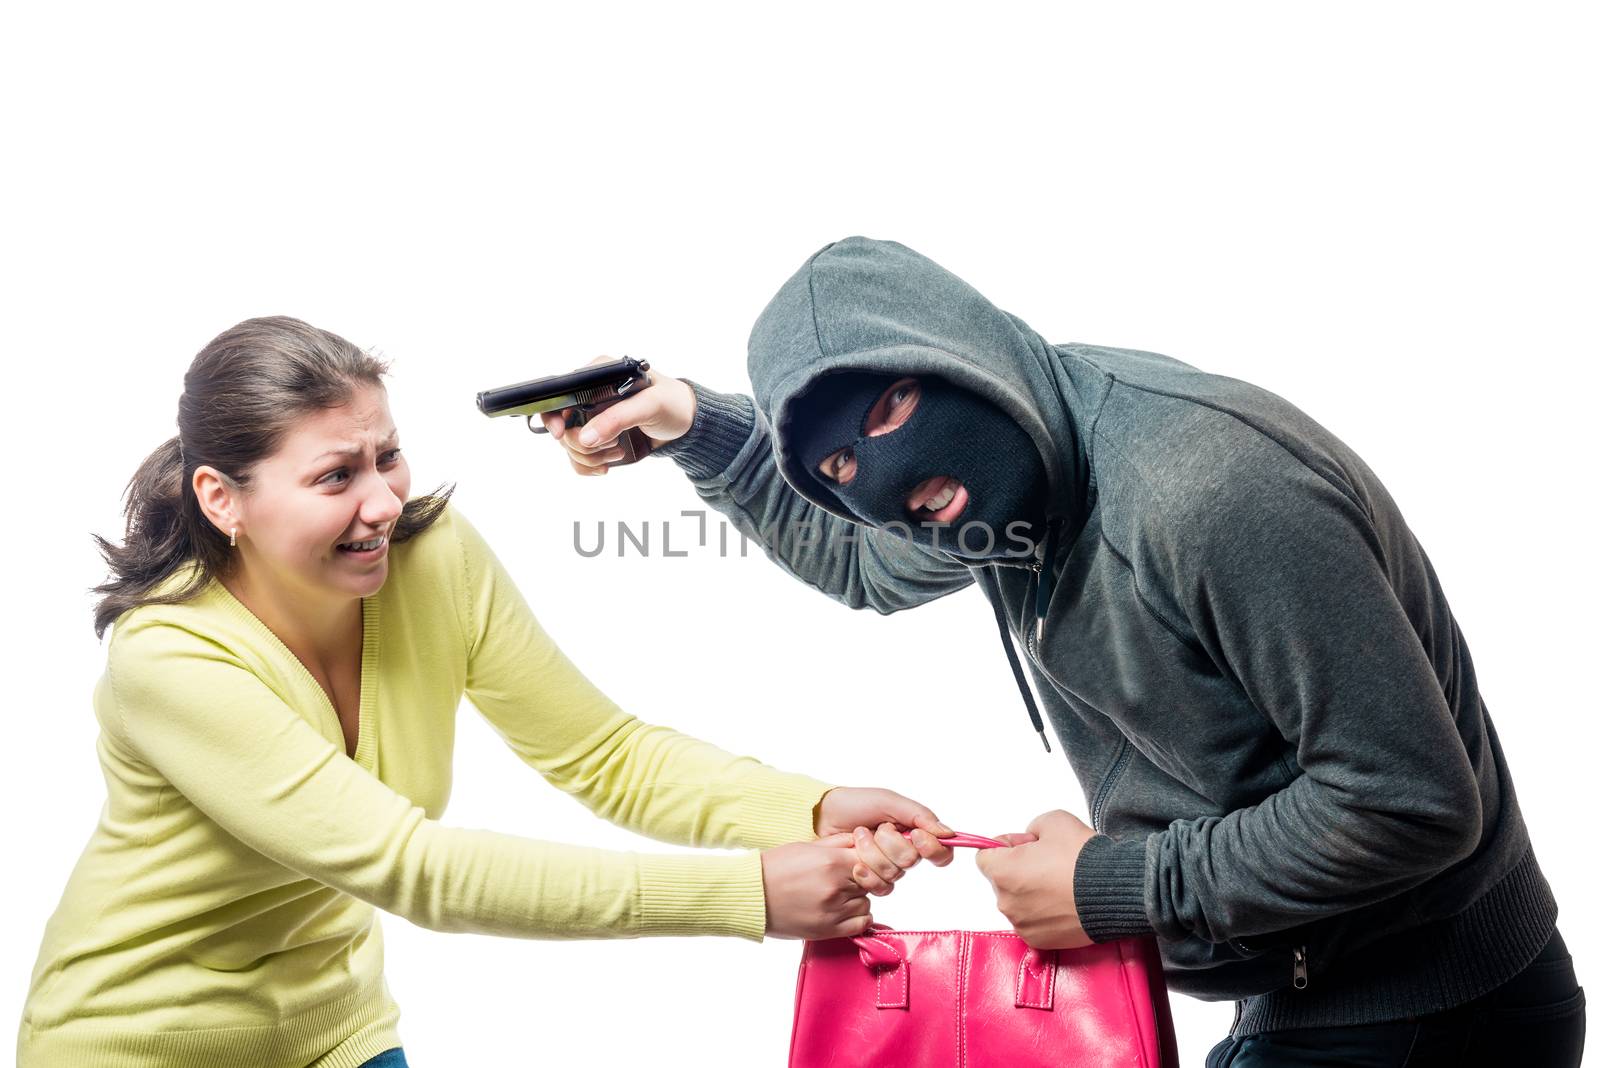 Street thief in a balaclava with a gun steals a woman's bag, sho by kosmsos111